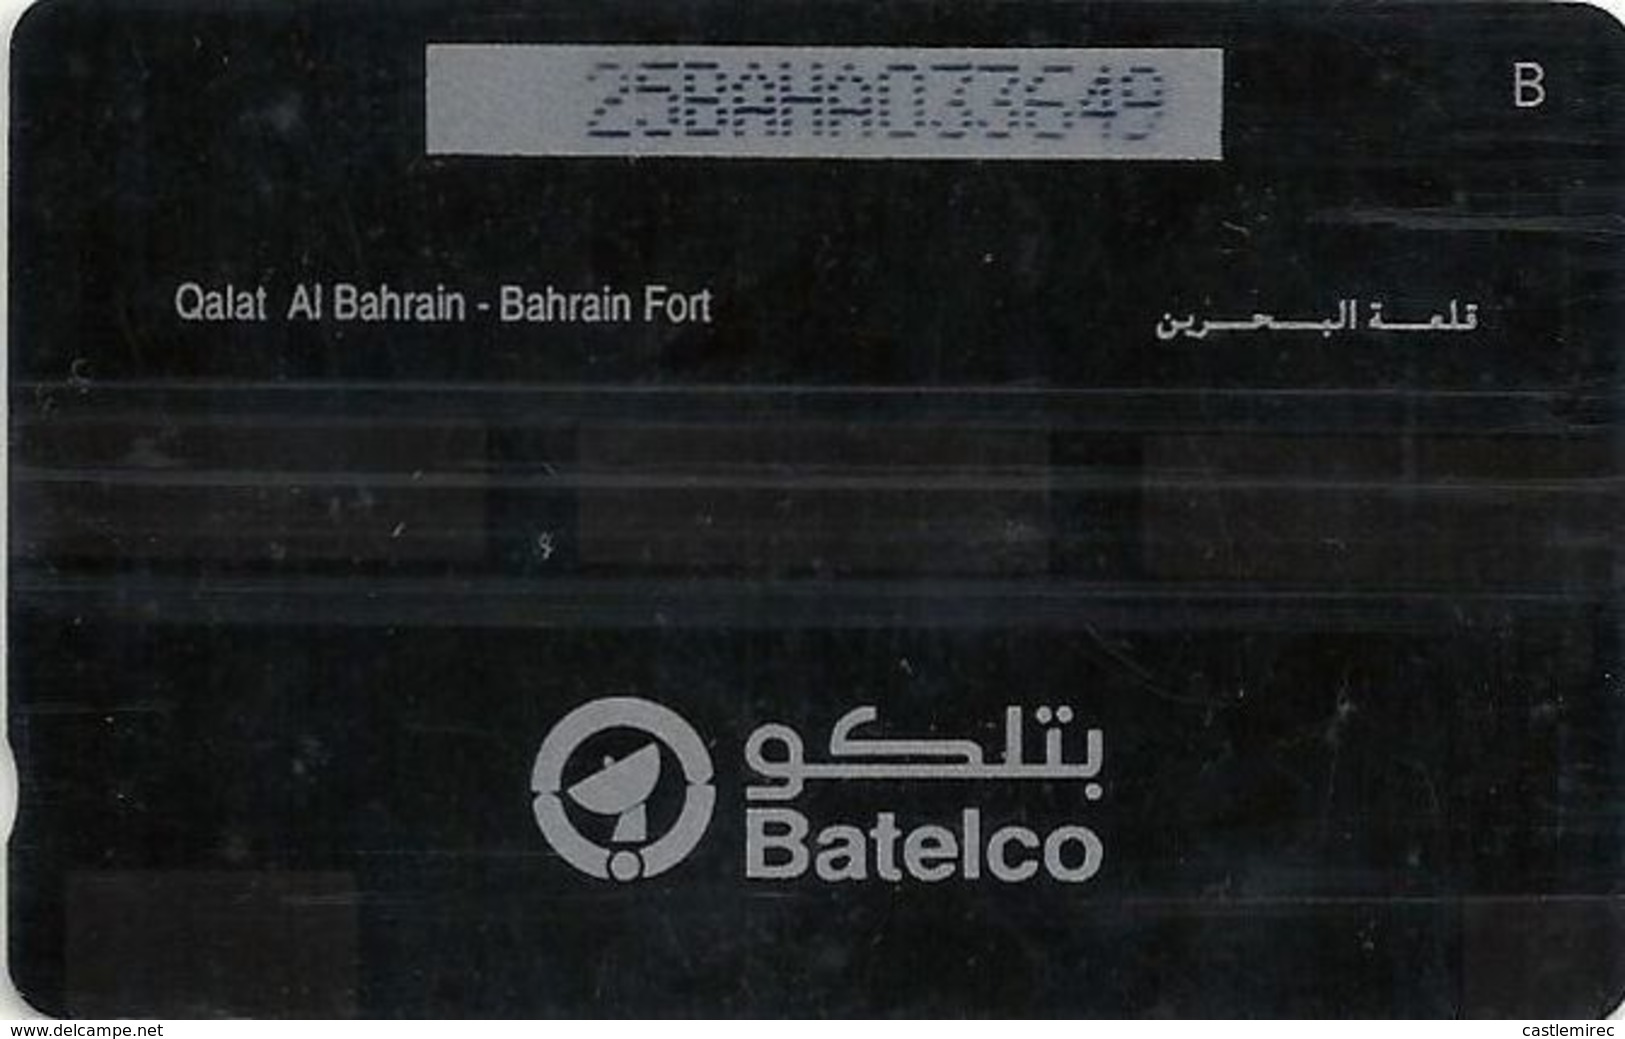 Bahrain Qalat Al Bahrain - Bahrain Fort_1993_Tirage100 000pcs - Bahrain